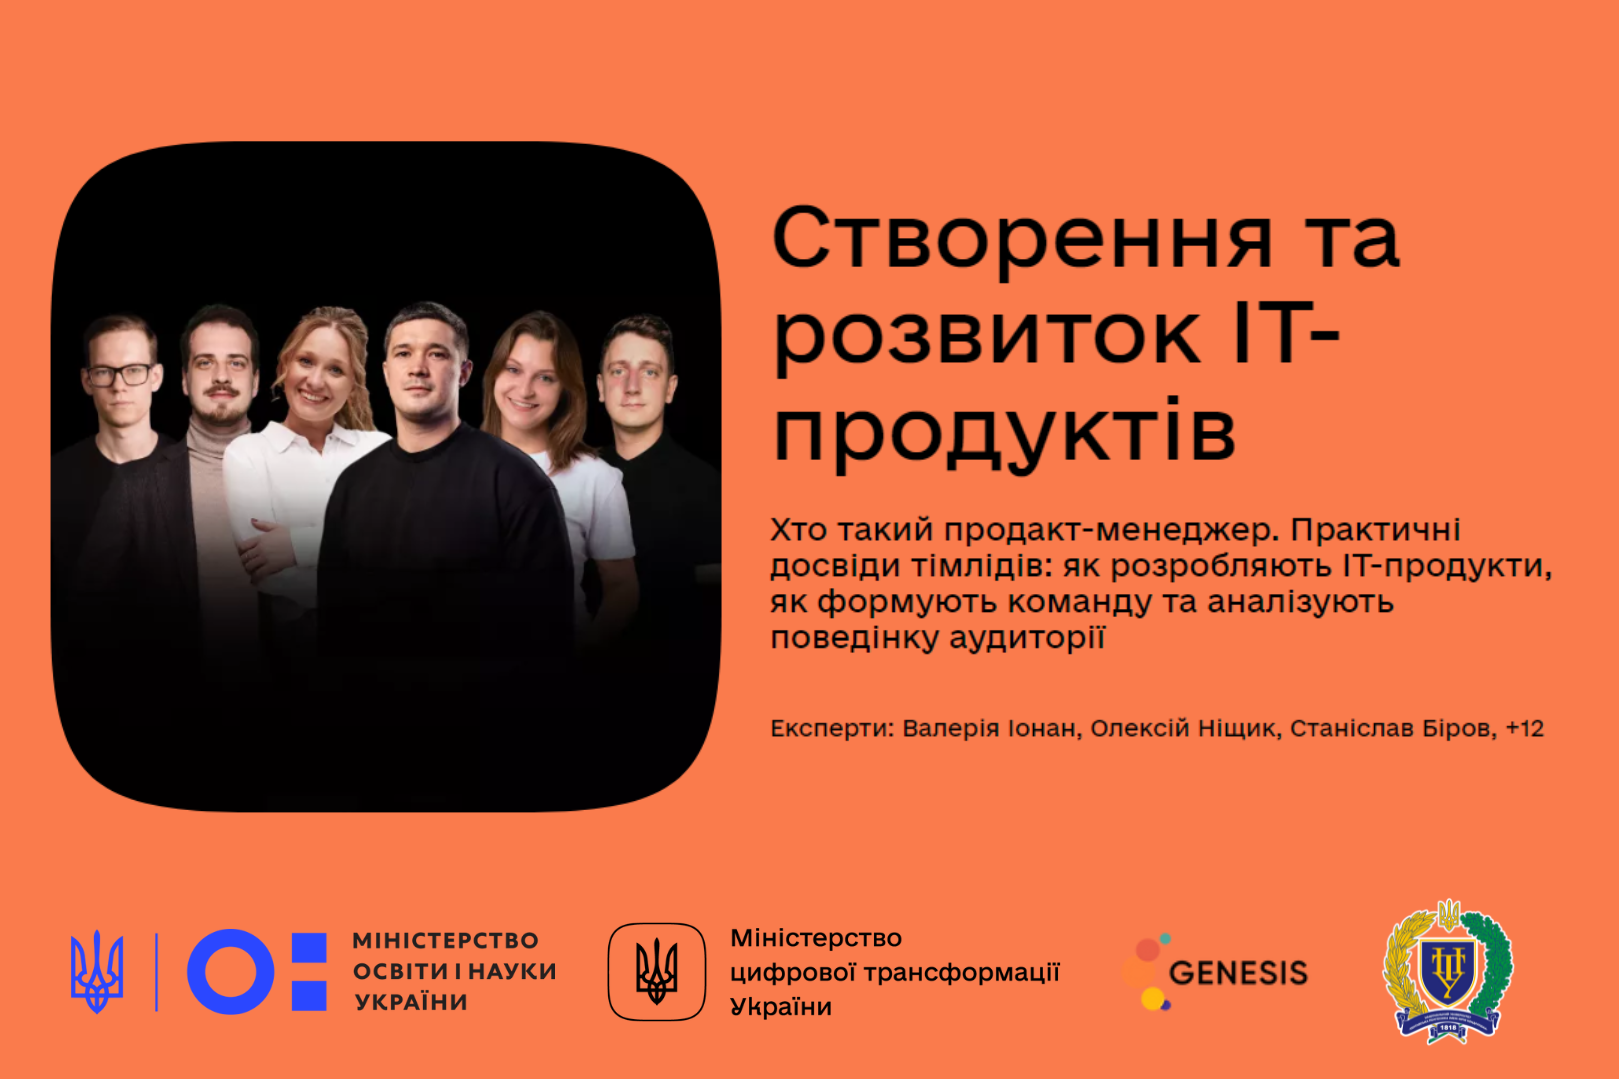 Мінцифра, МОН України та ІТ-компанія Genesis запускають навчальний інтенсив для викладачів